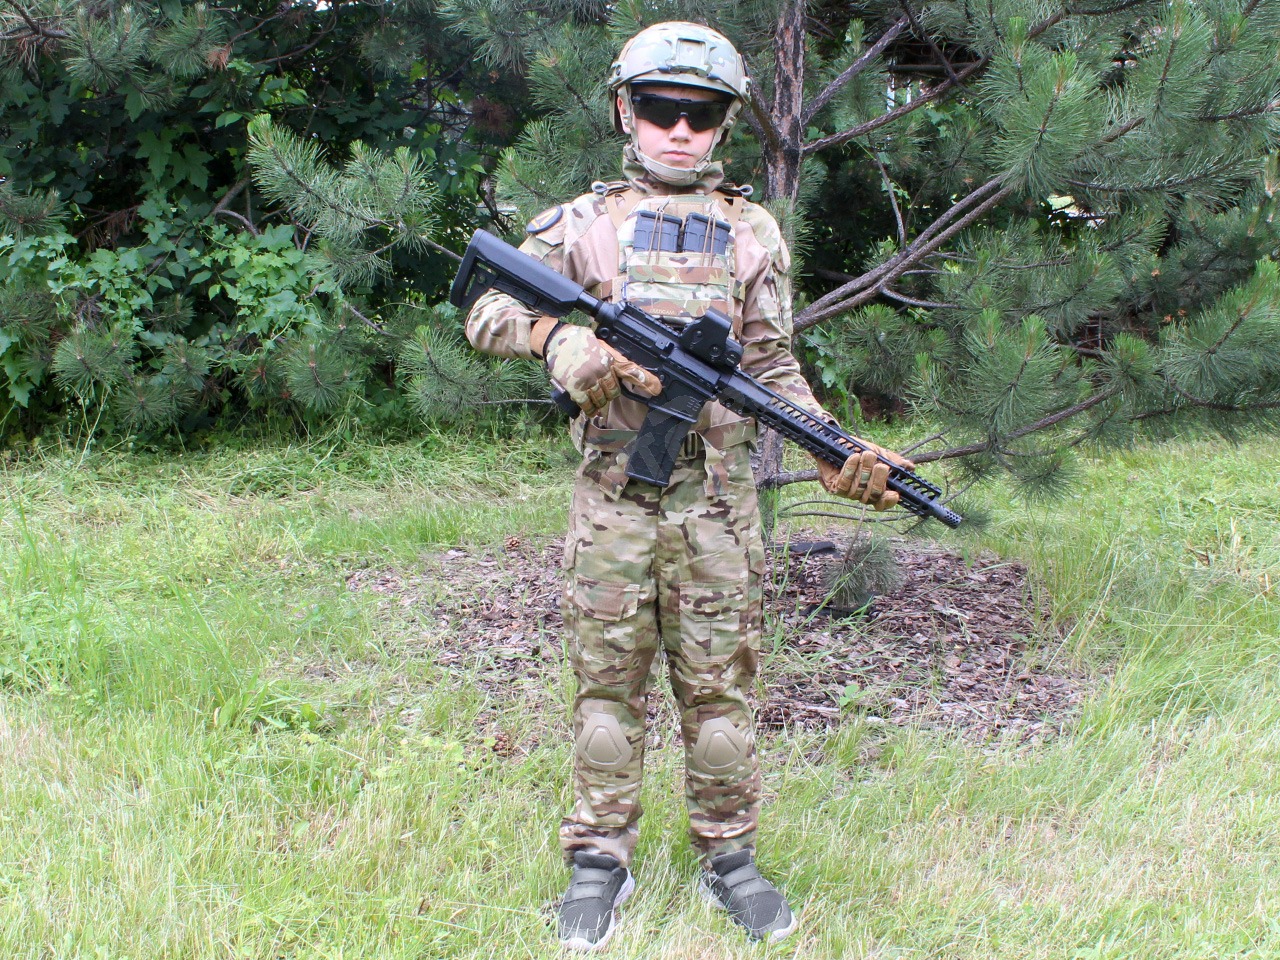 G3 Combat suit For kids - Multicam, 110-120cm [EmersonGear]